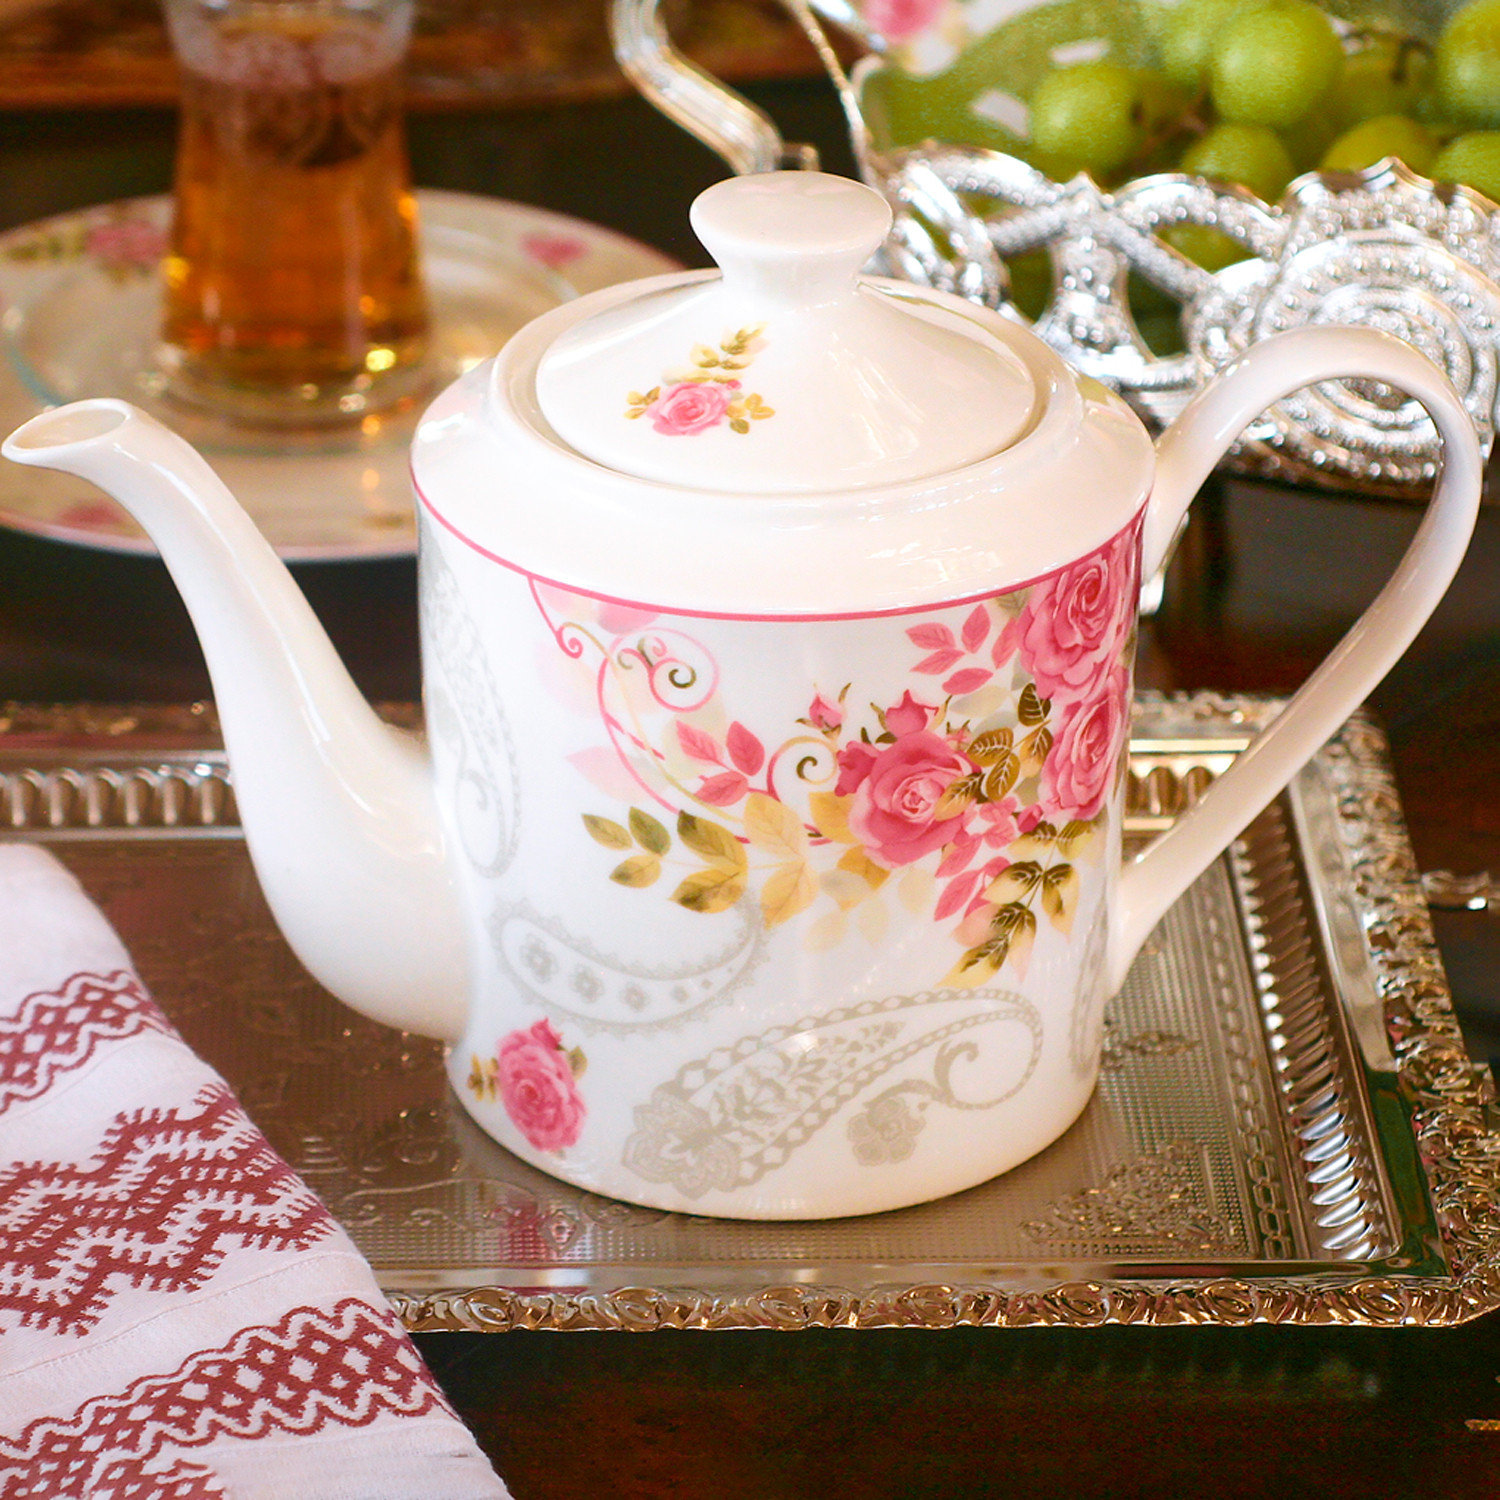 https://assets.wfcdn.com/im/35973190/compr-r85/2368/236855959/stp-goods-rose-garden-3719oz-floral-teapot.jpg